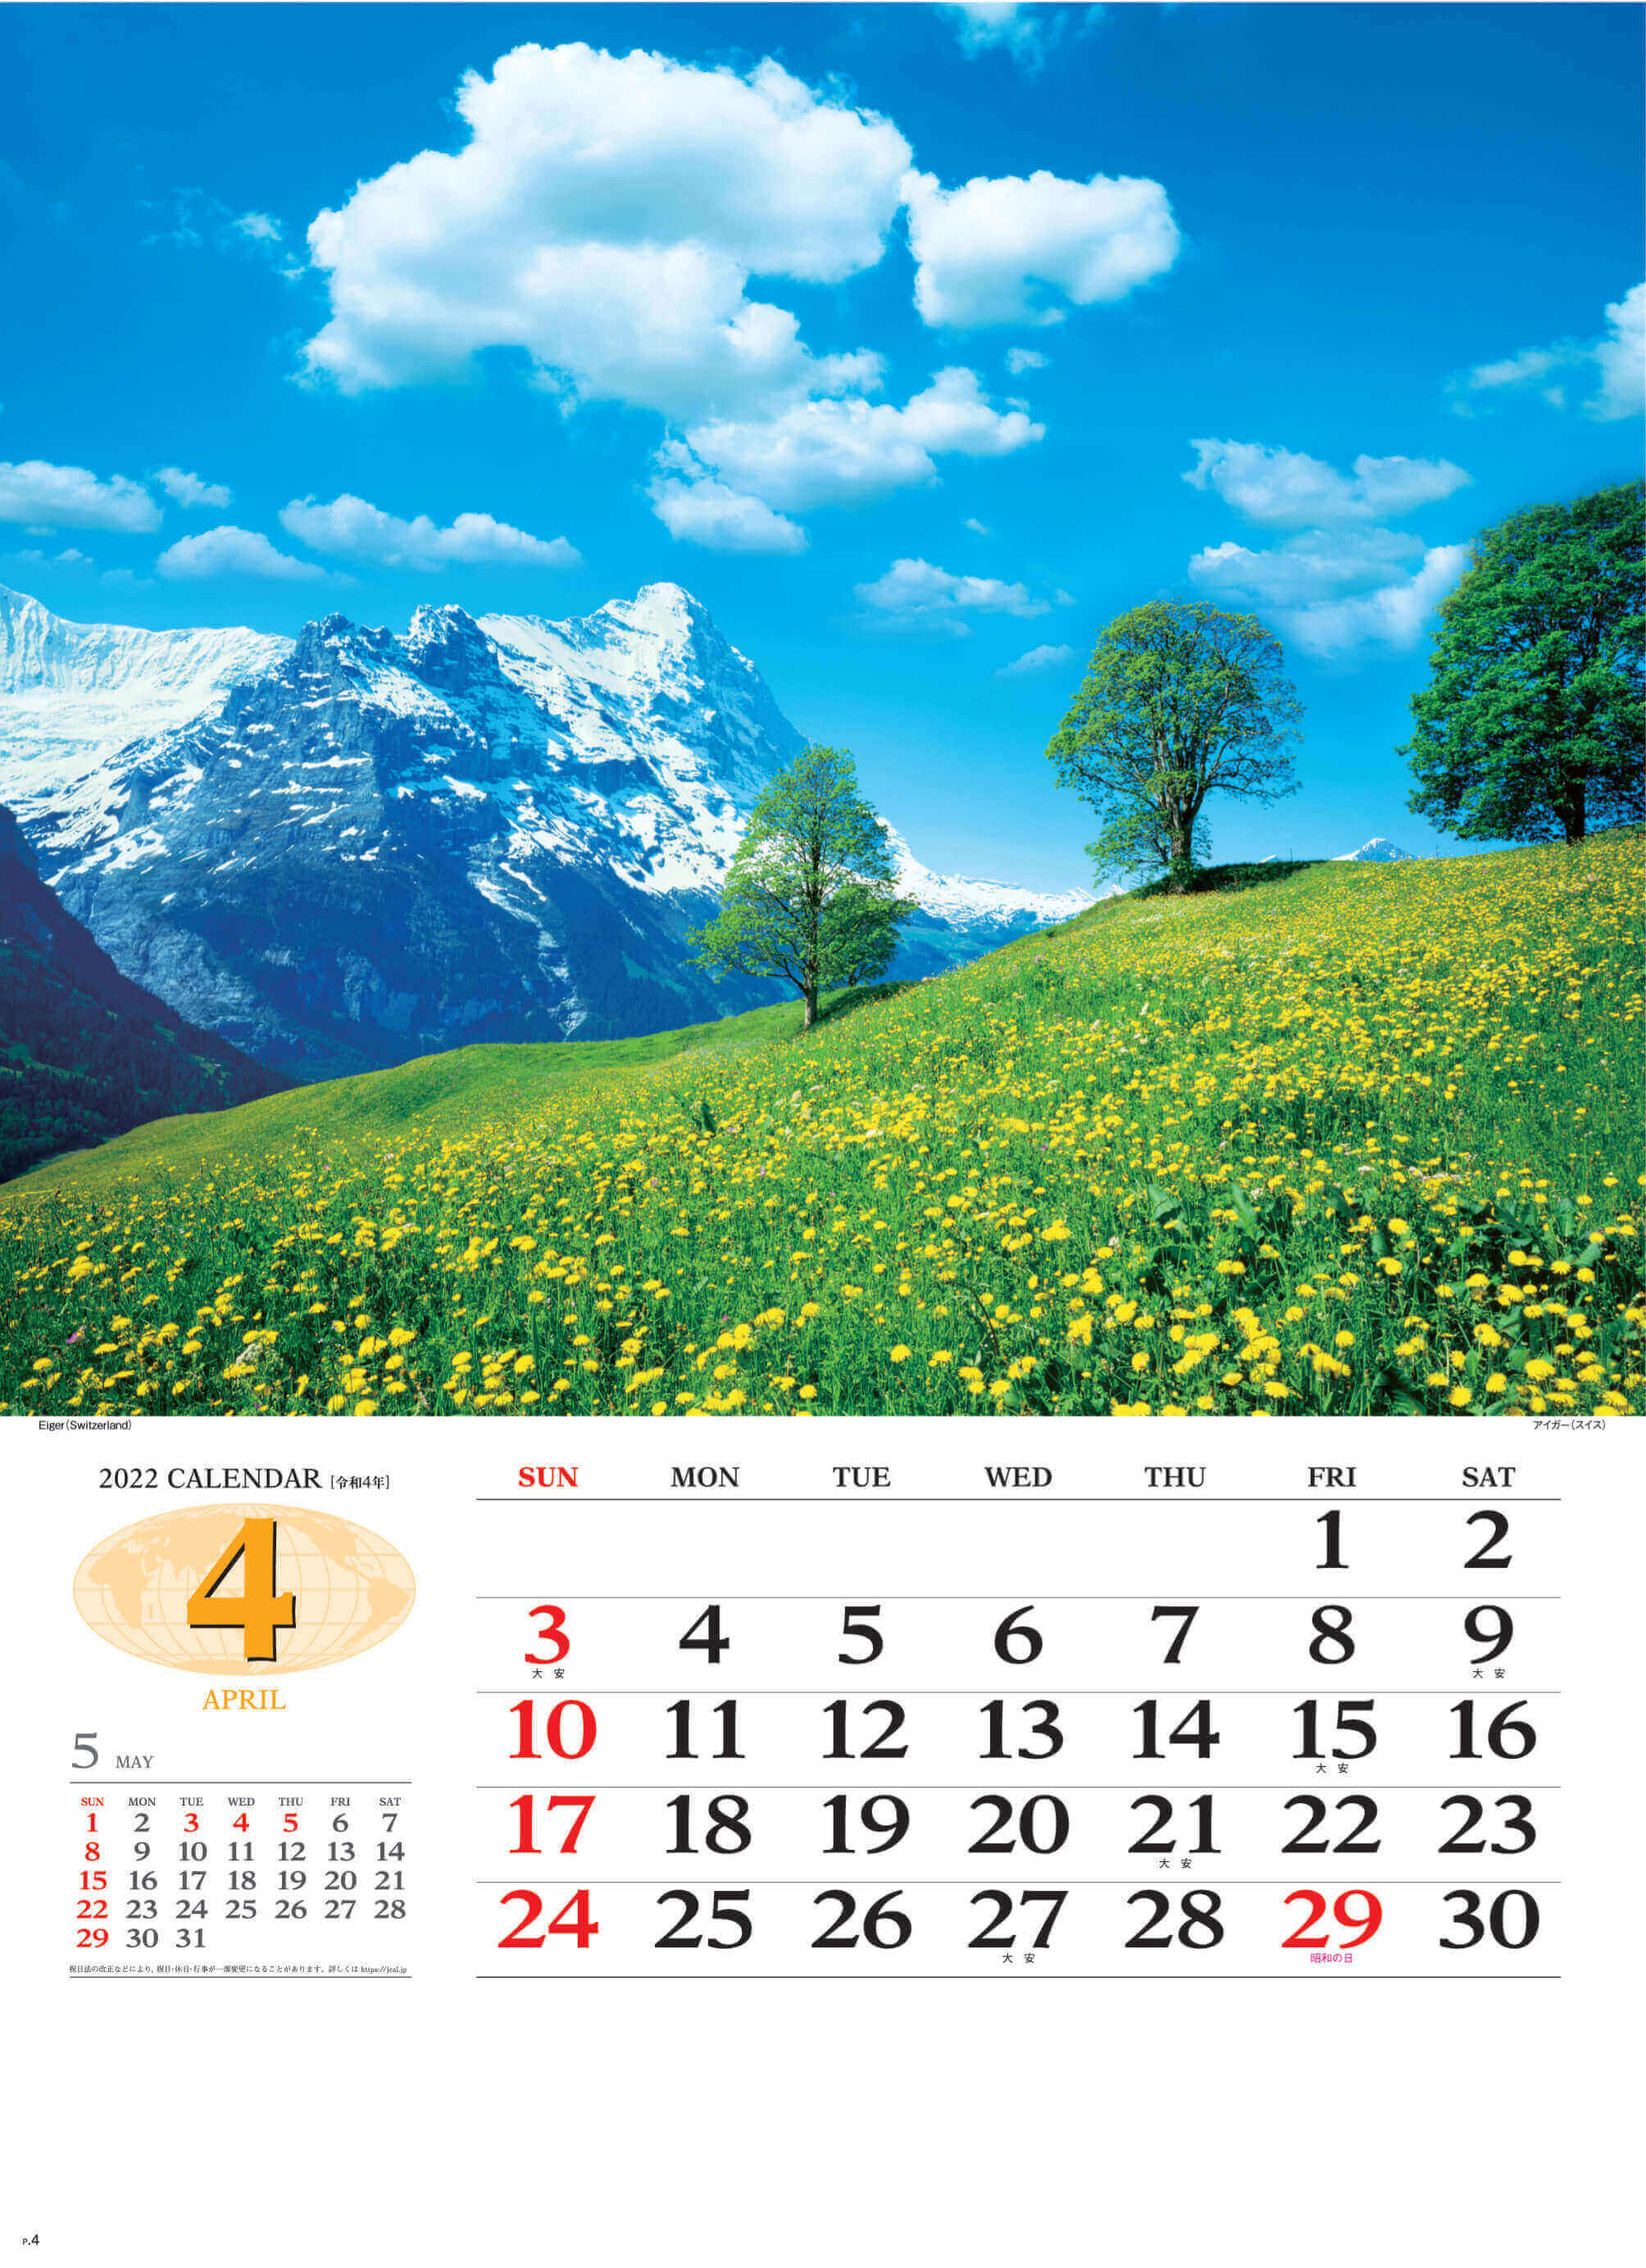 4月 アイガー スイス 世界の景観 2022年カレンダーの画像